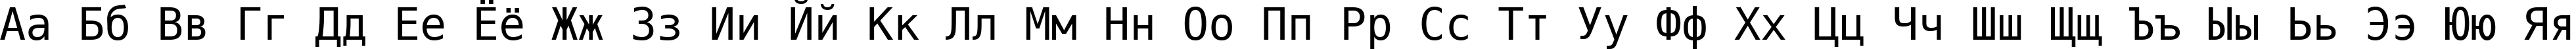 Пример написания русского алфавита шрифтом DejaVu Sans Mono